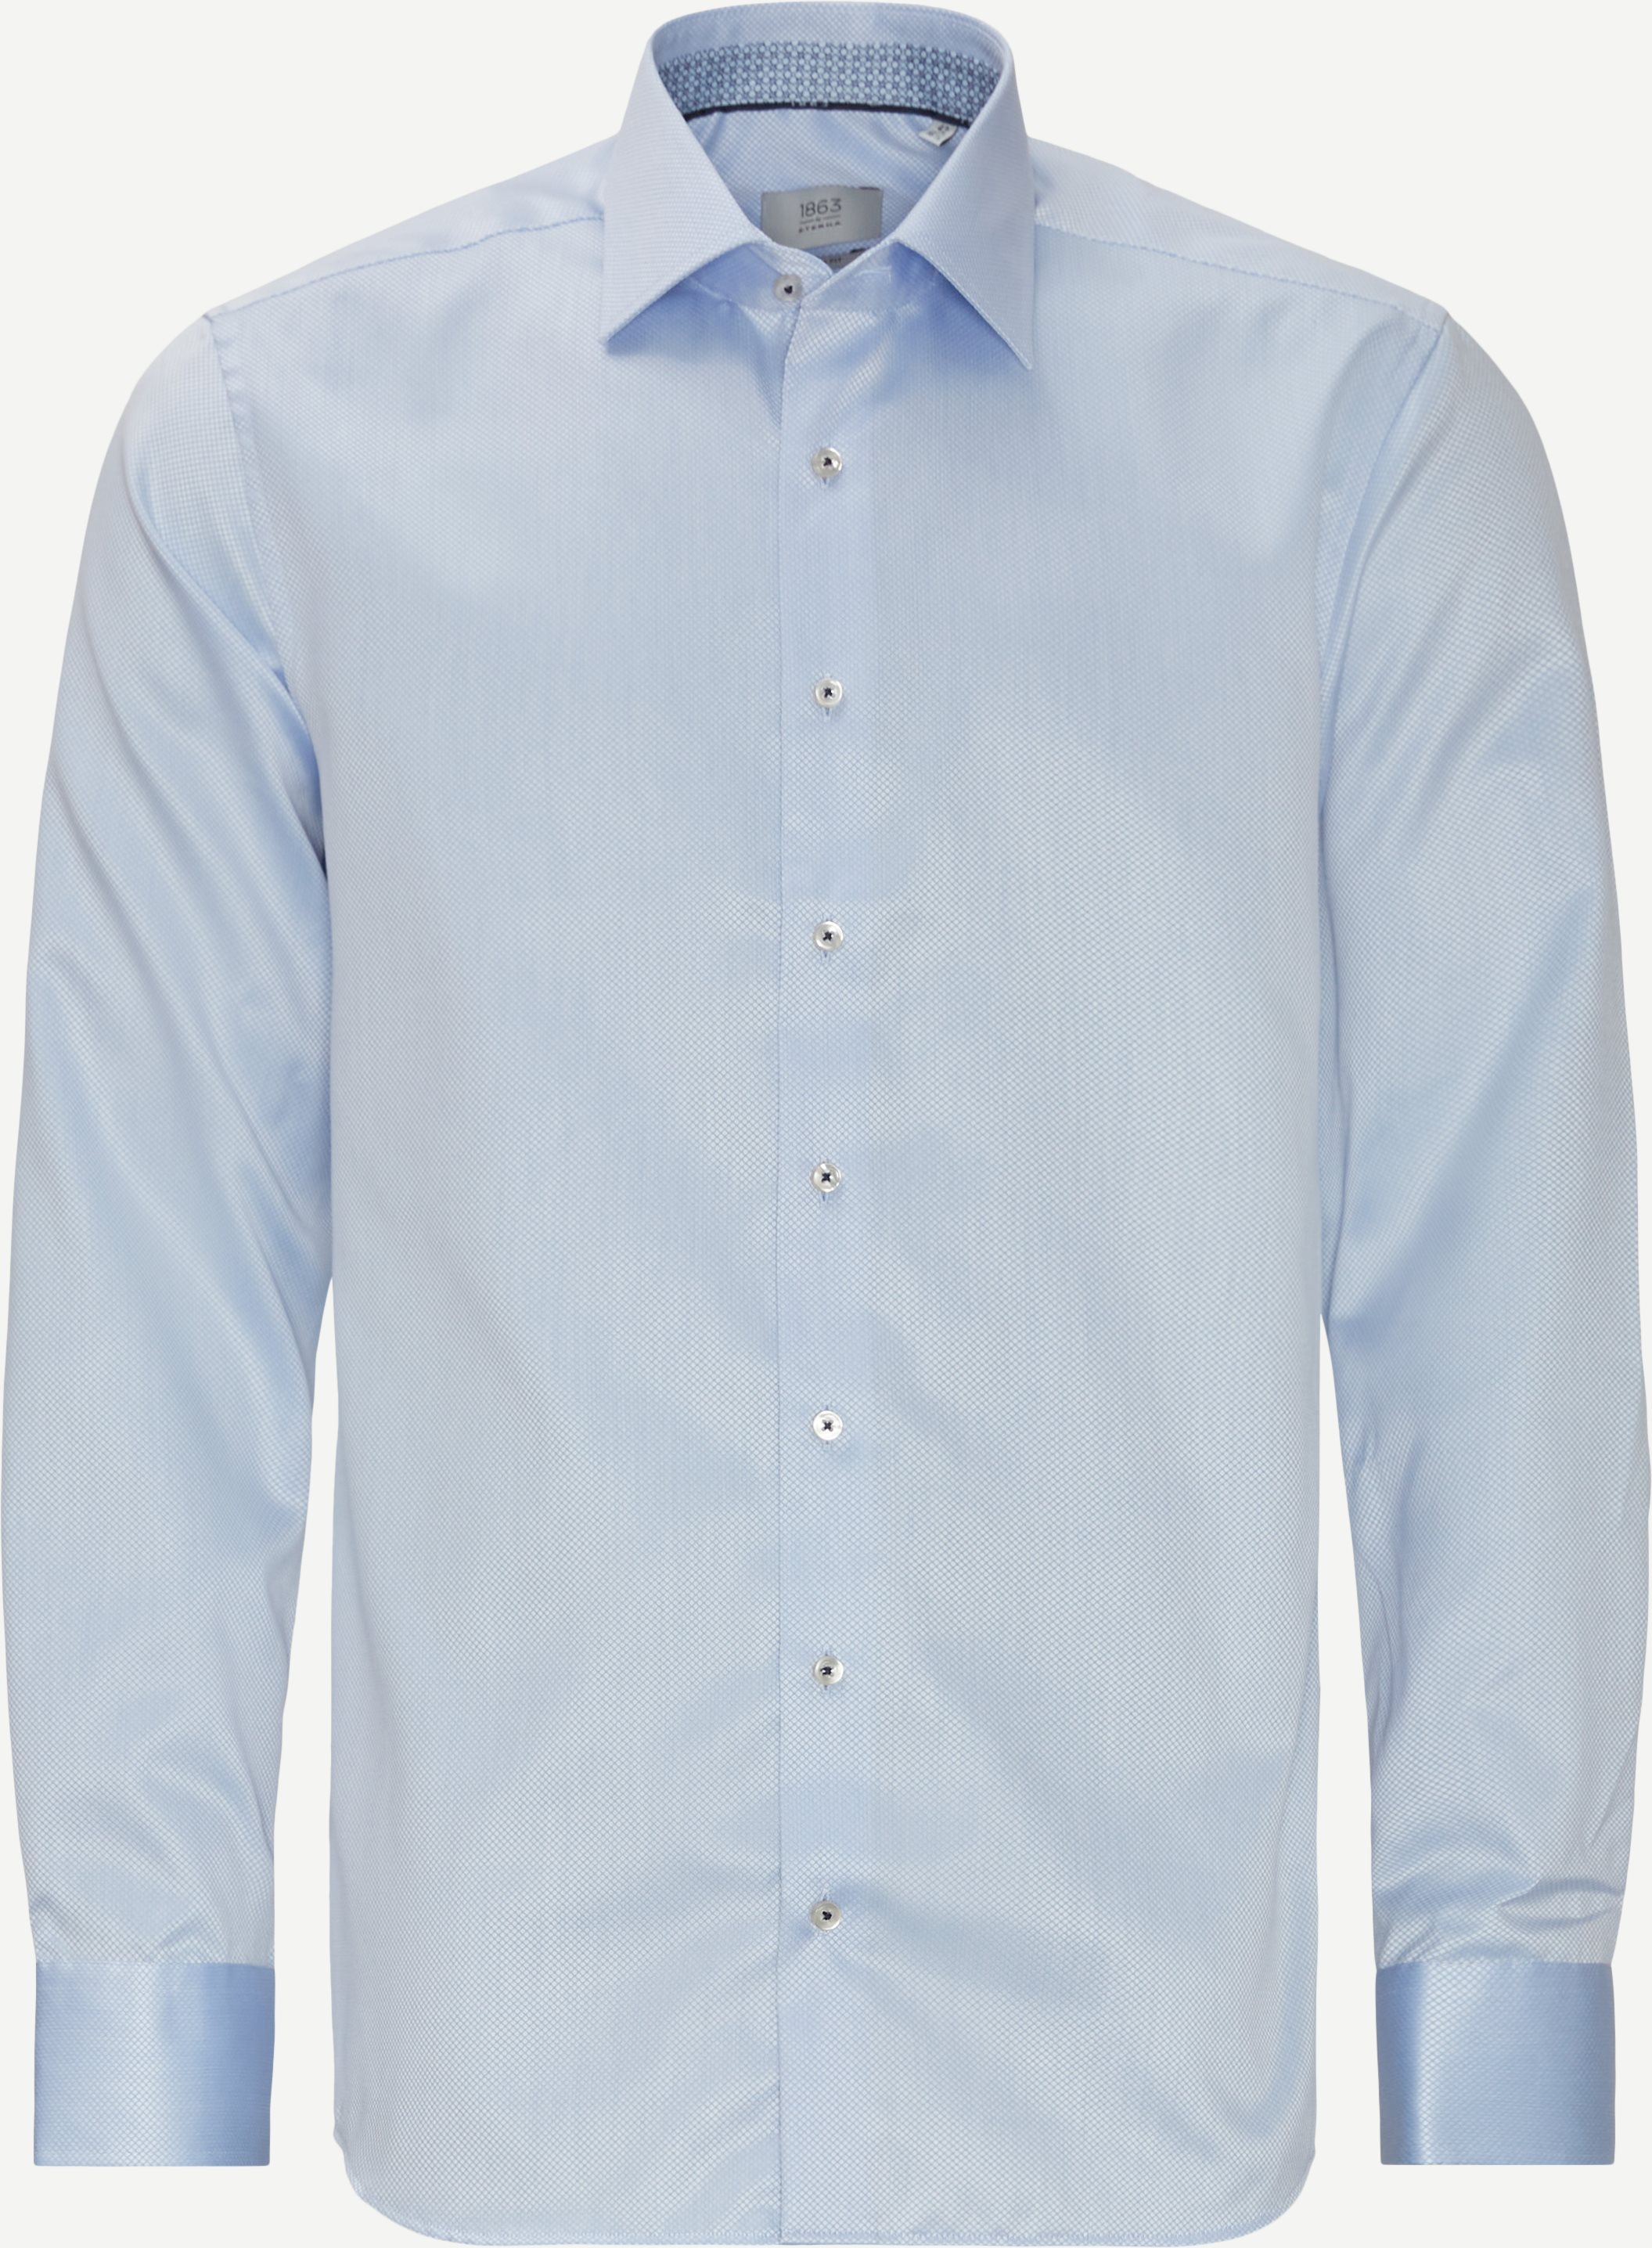 3960 Skjorte - Skjorter - Slim fit - Blå